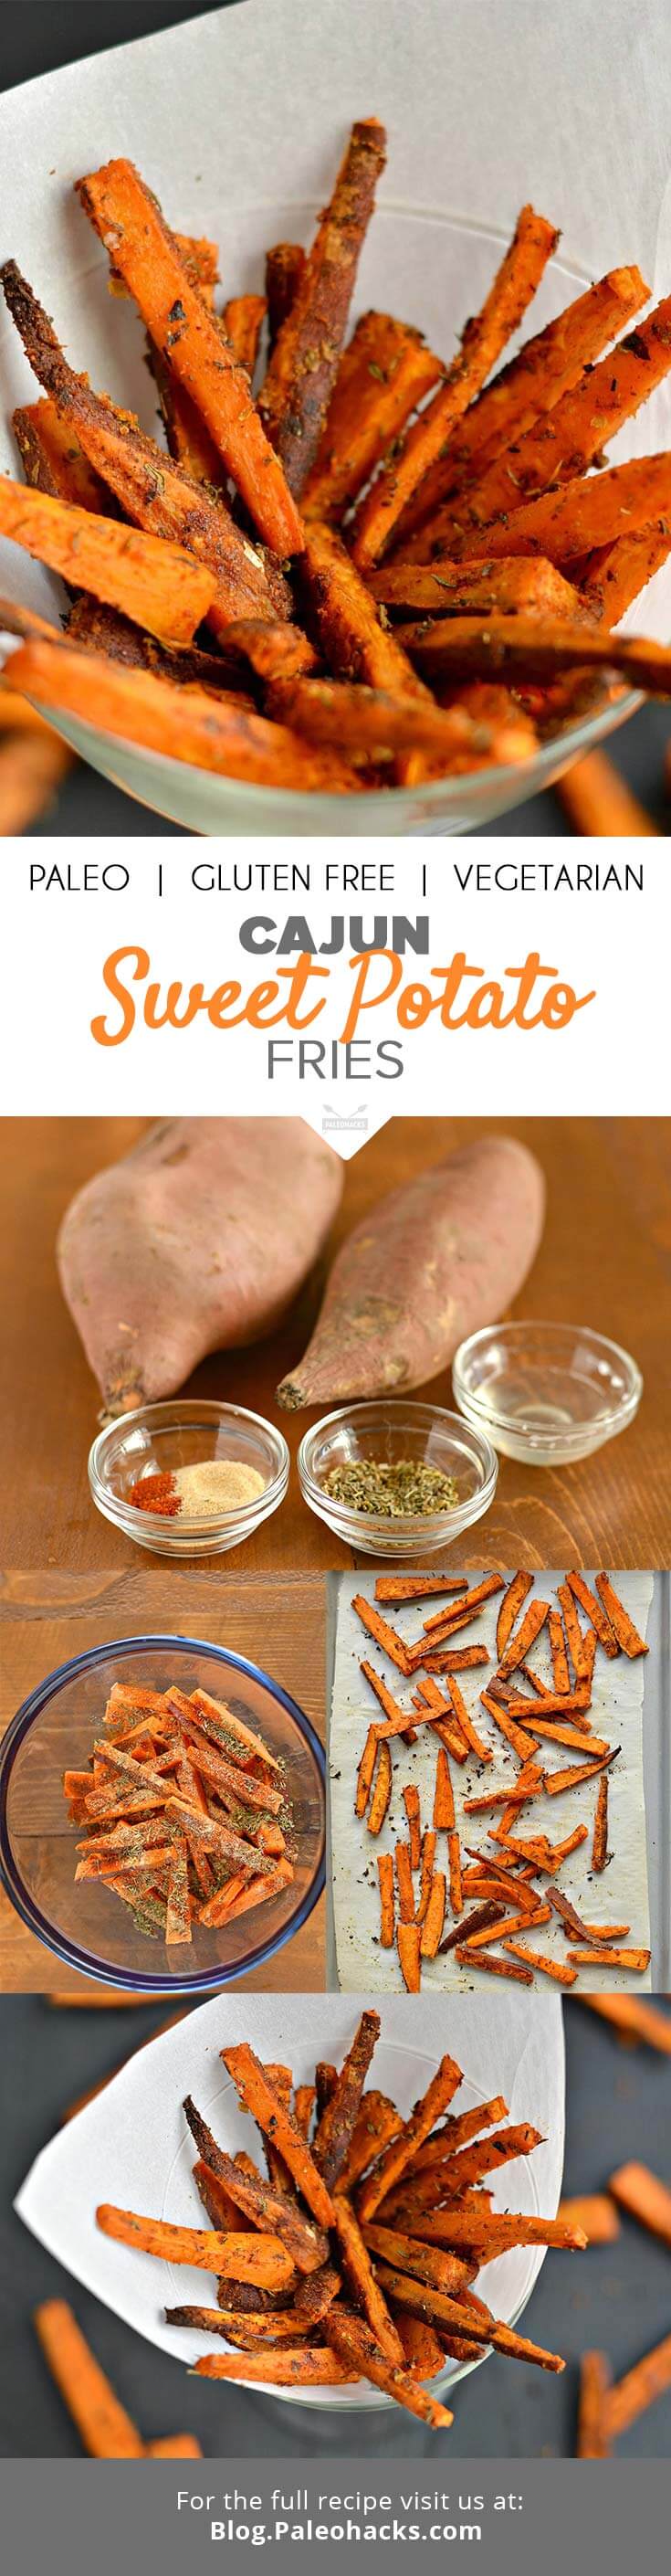 cajun sweet potato fries pin